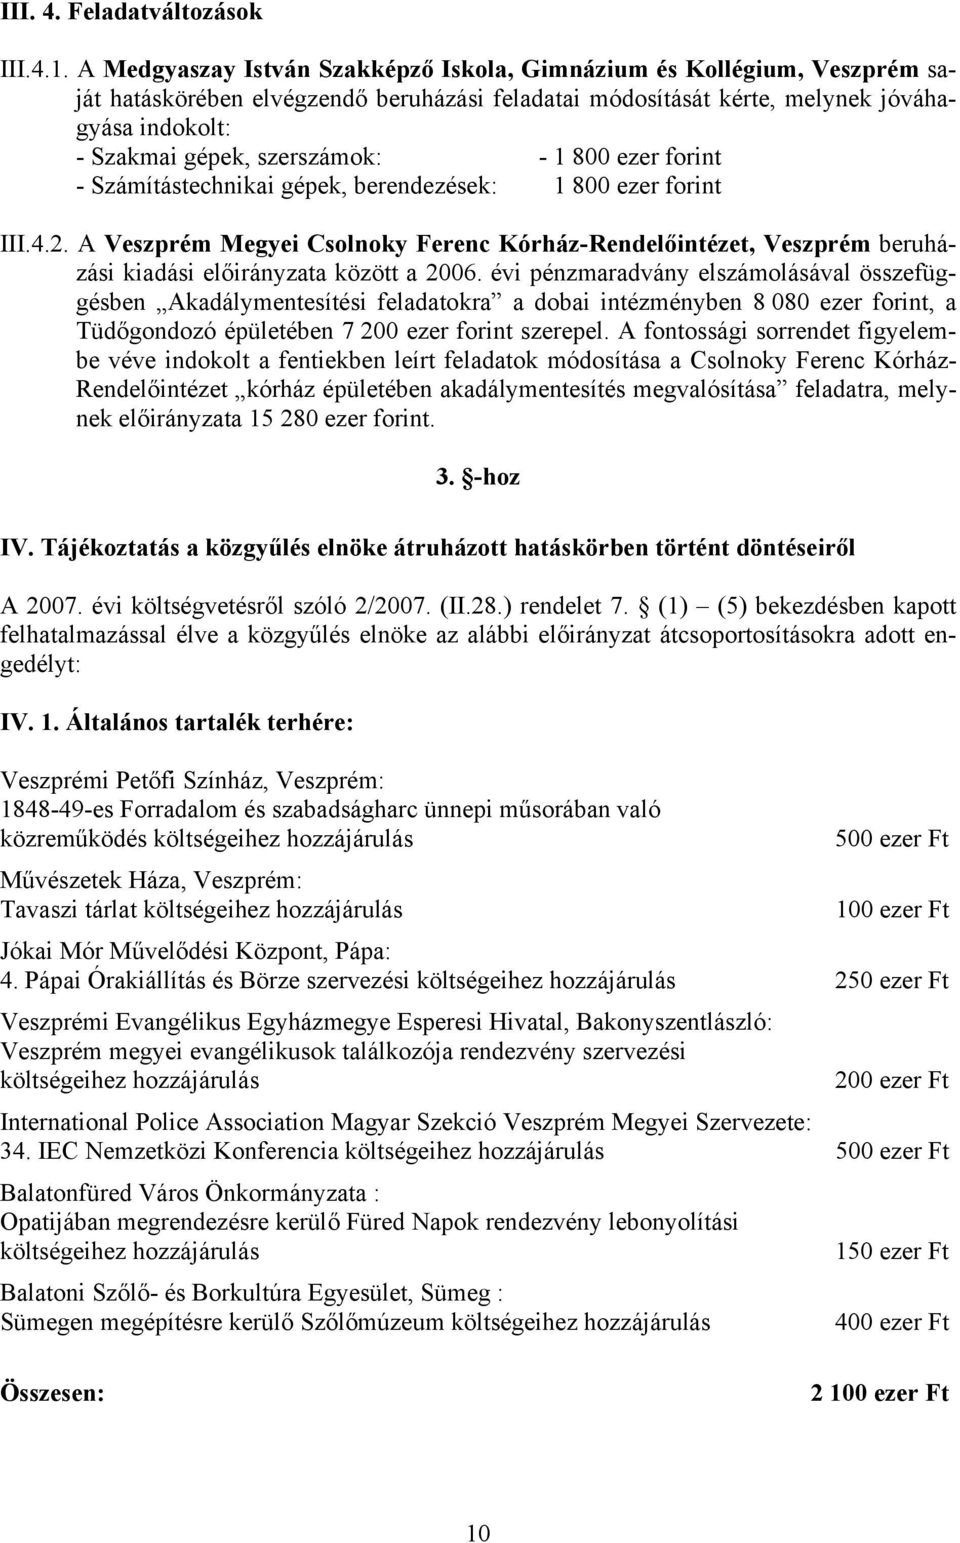 - 1 800 ezer forint - Számítástechnikai gépek, berendezések: 1 800 ezer forint III.4.2. A Veszprém Megyei Csolnoky Ferenc Kórház-Rendelőintézet, Veszprém beruházási kiadási előirányzata között a 2006.